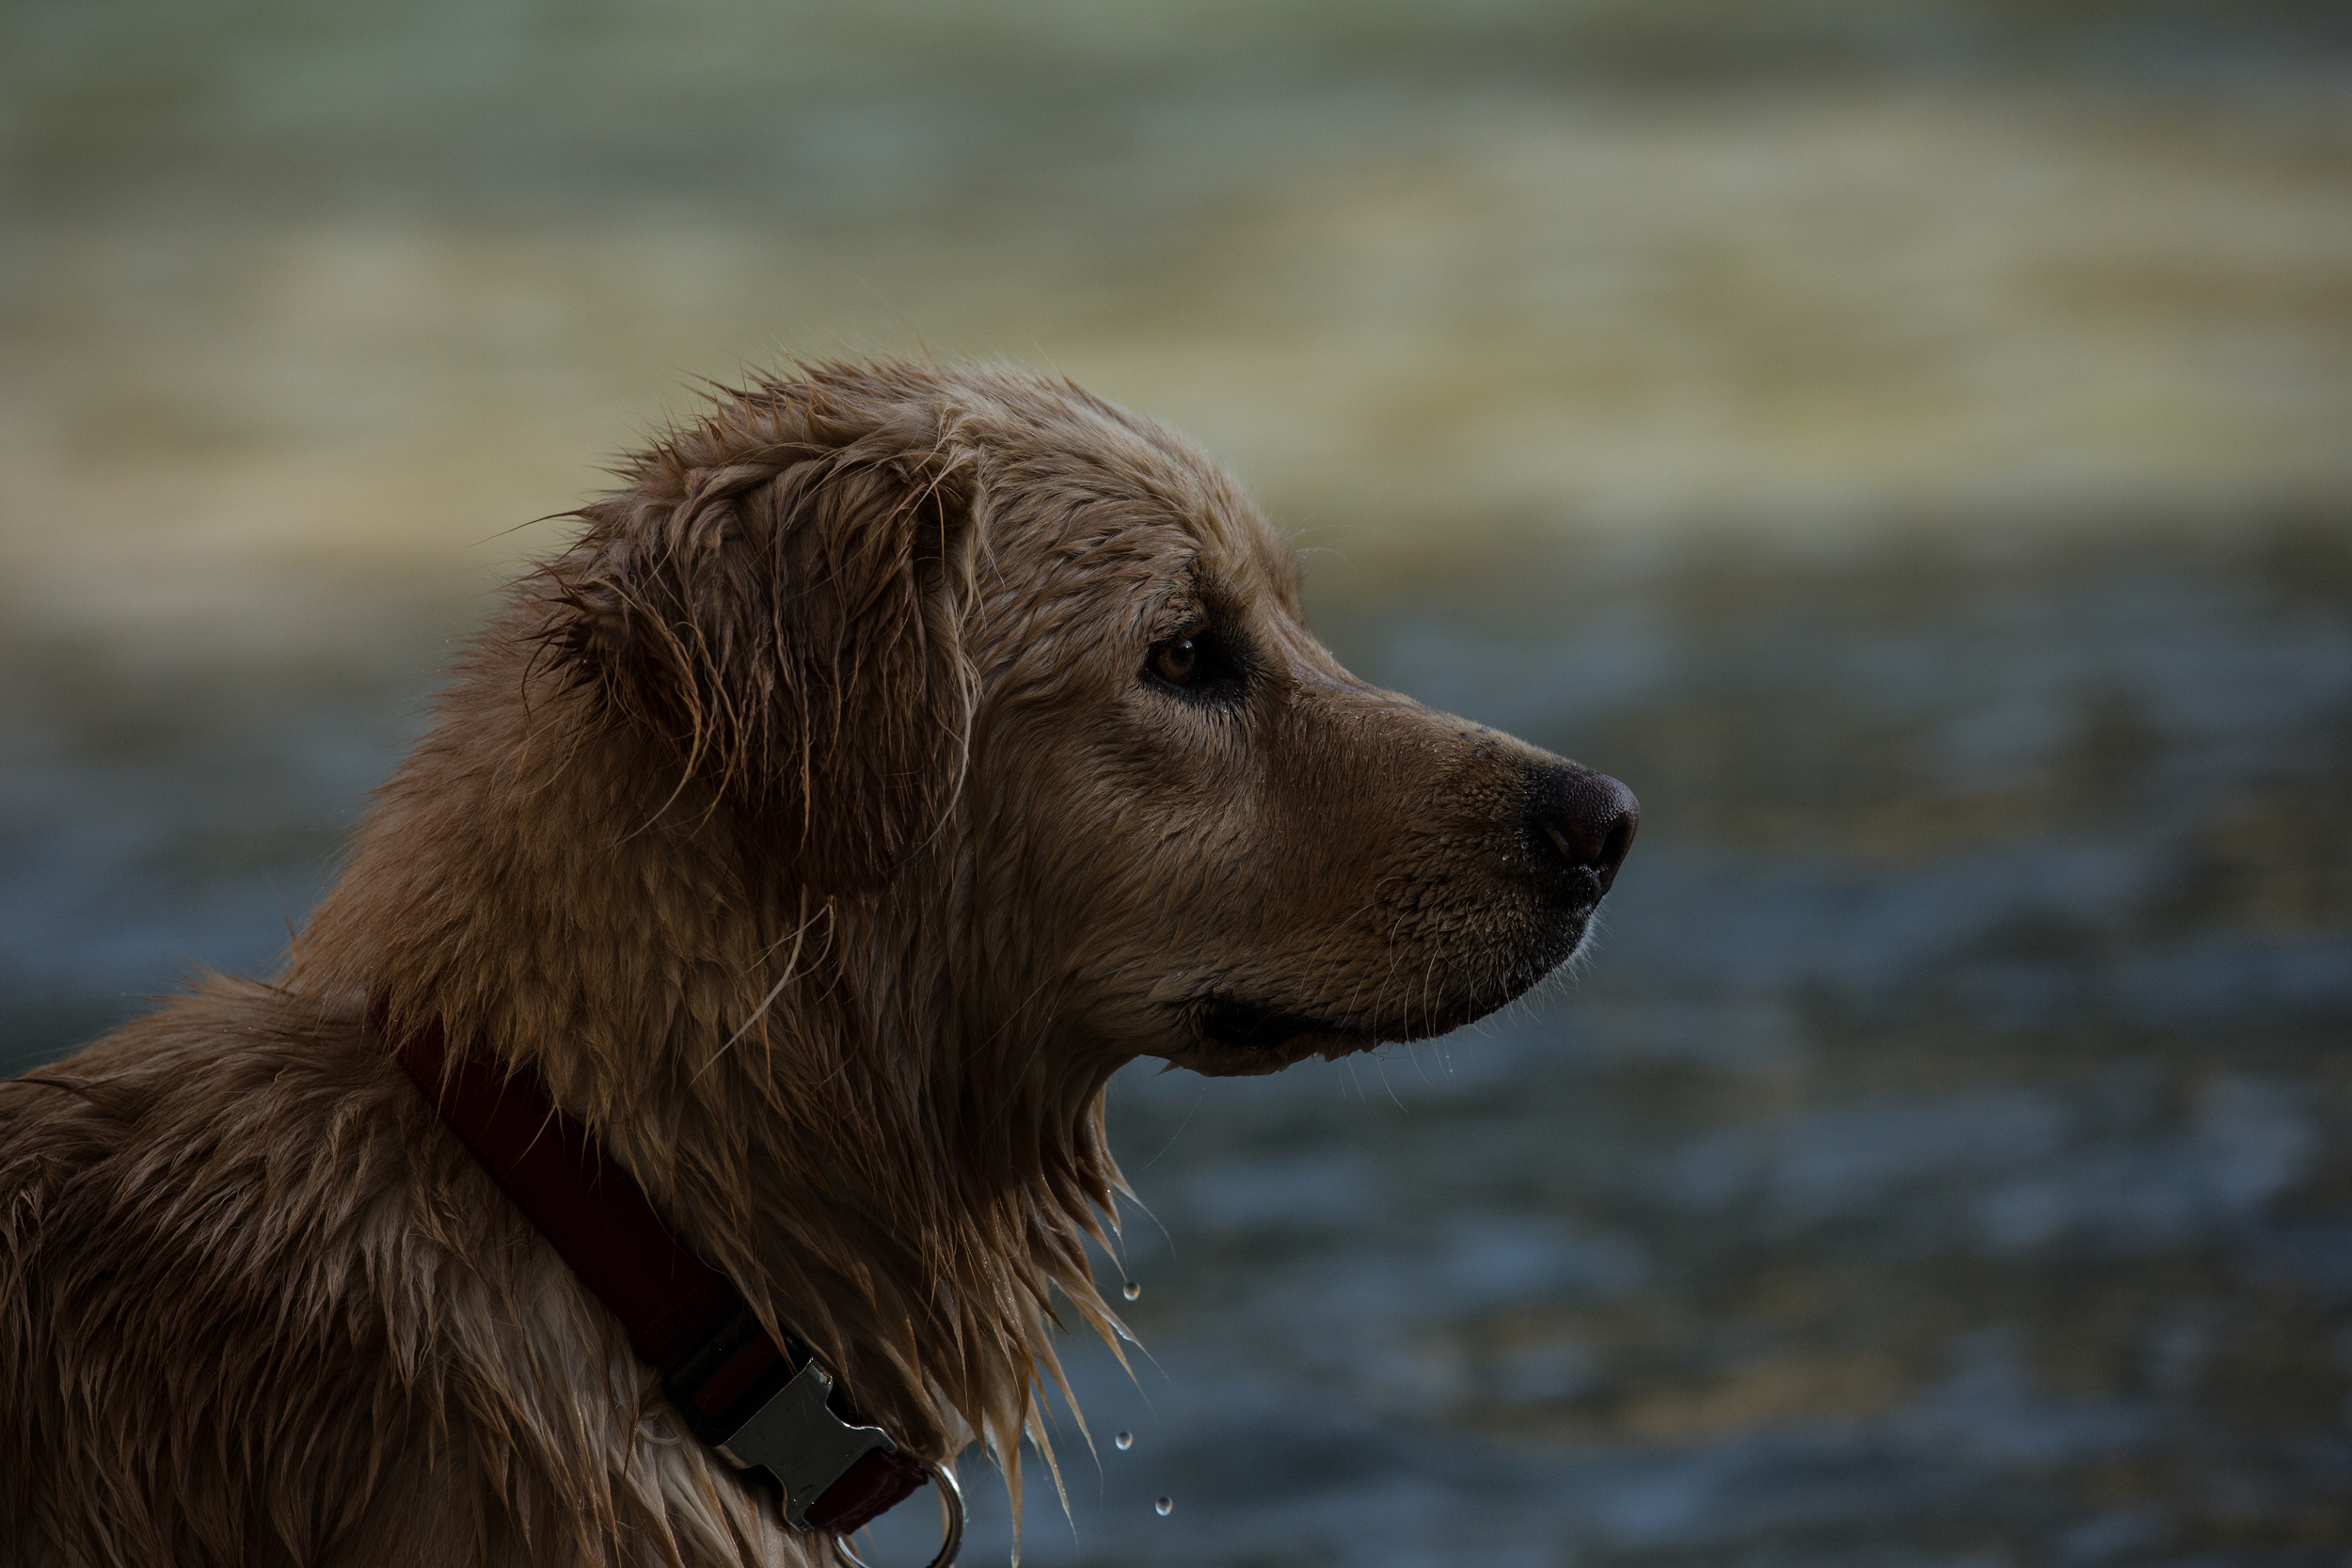 Wonderful wet dog